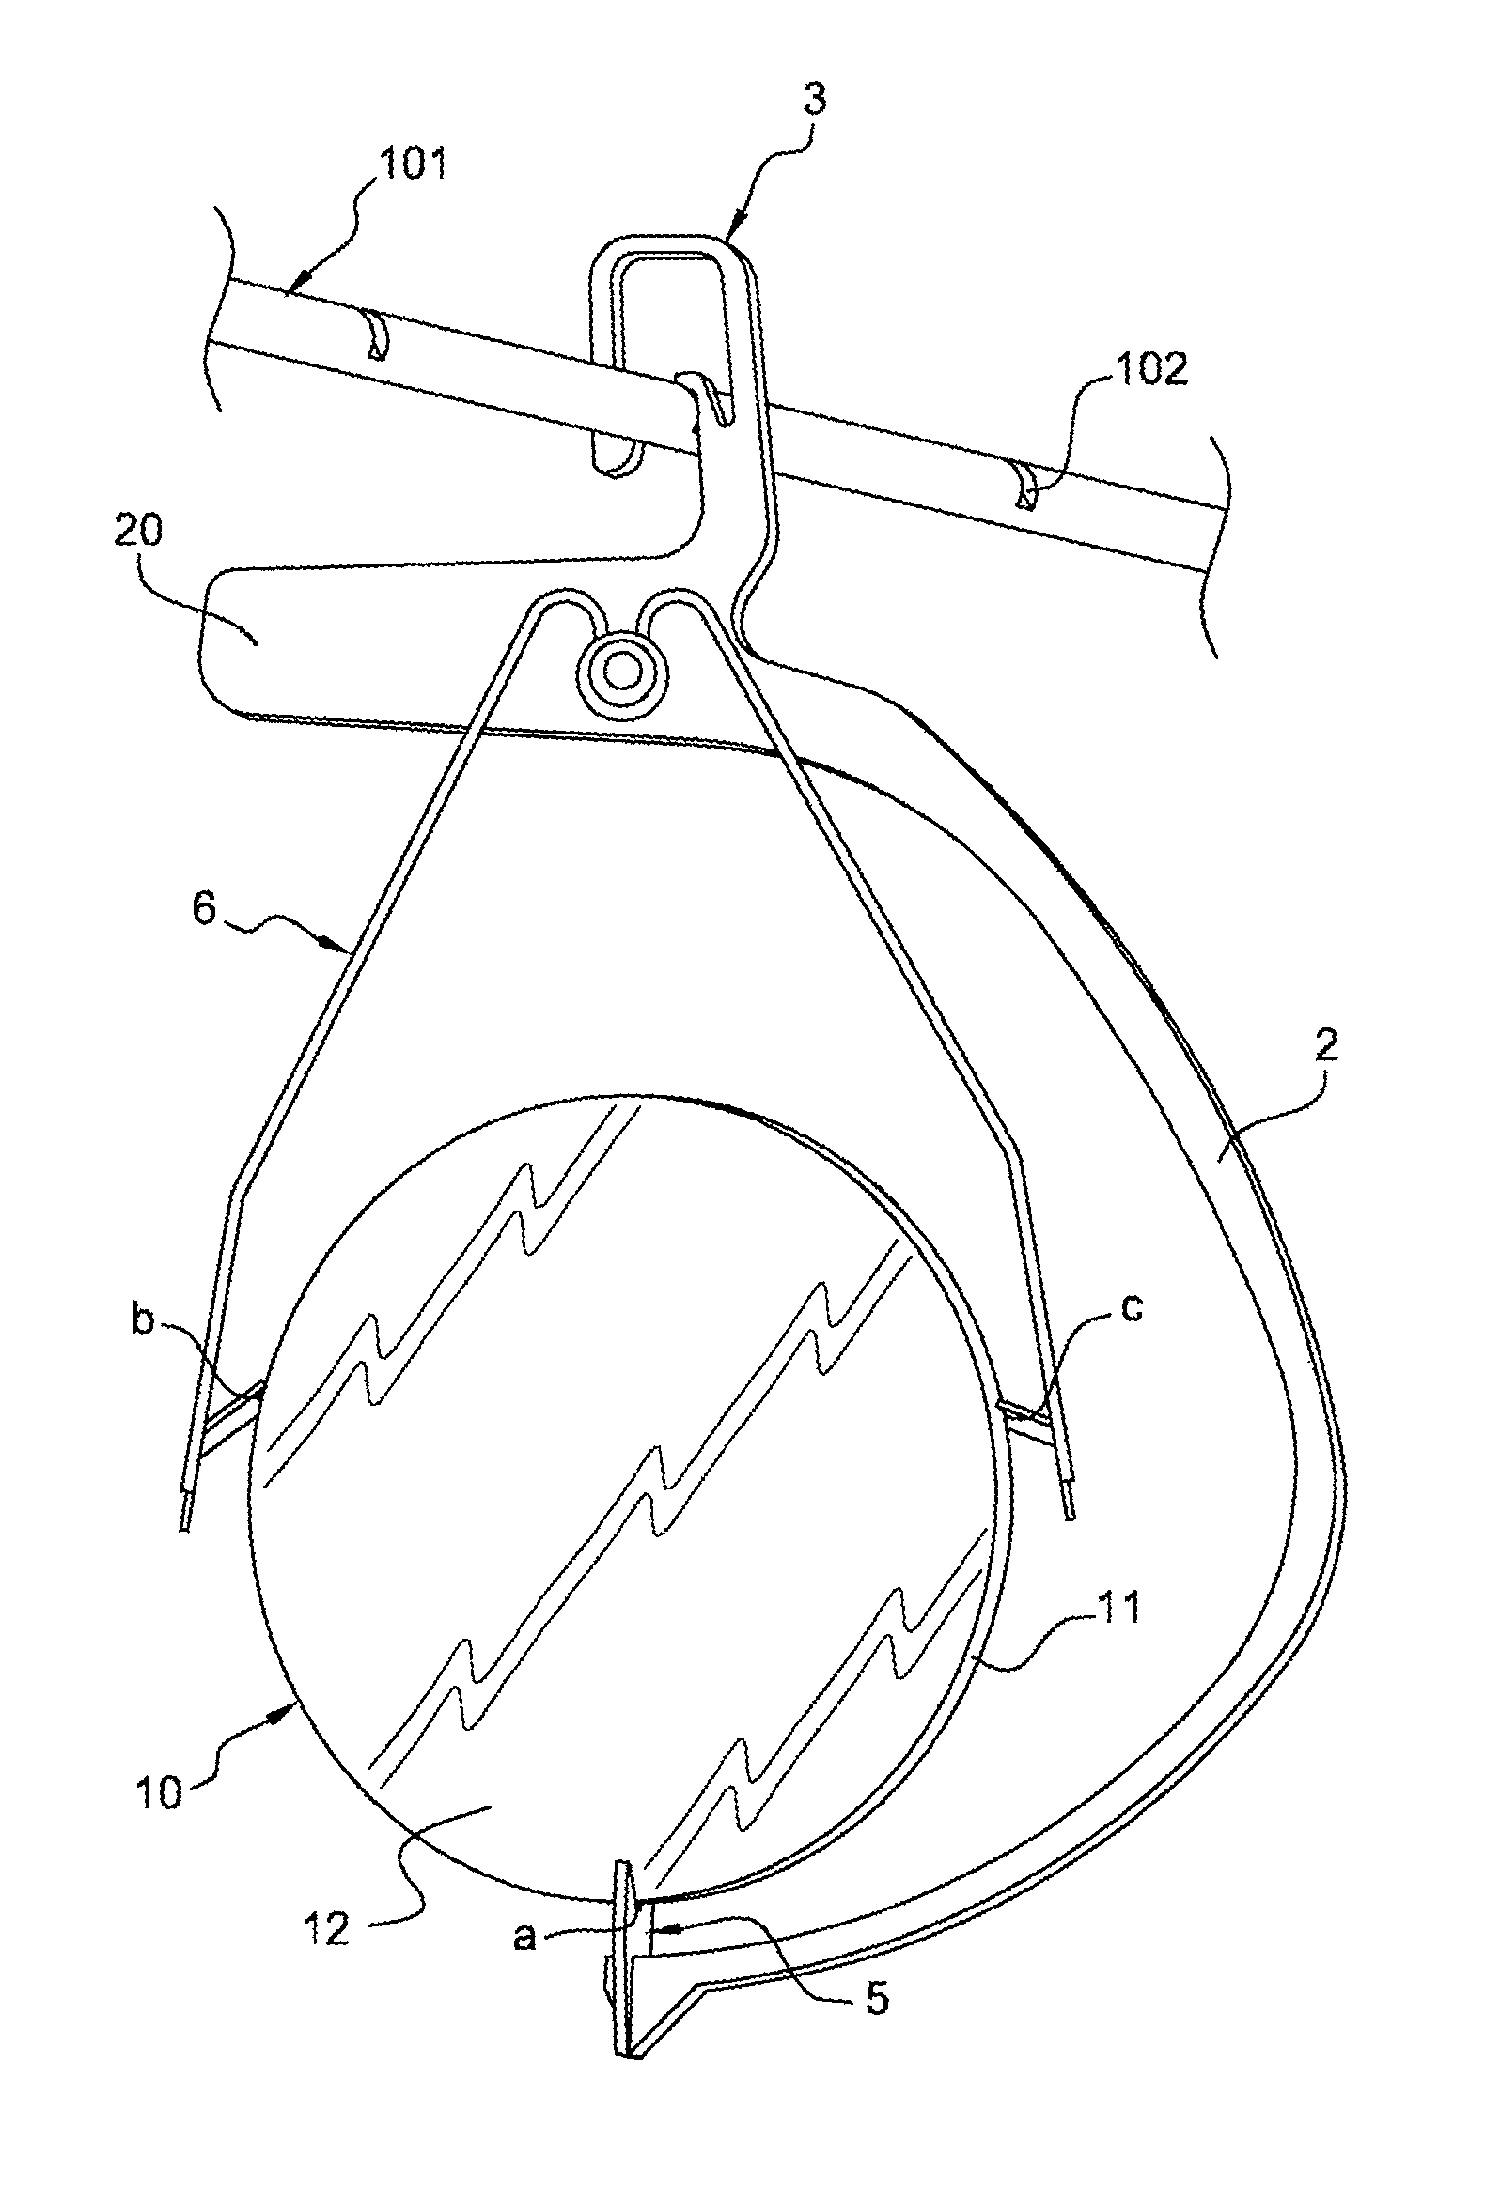 Lens-holder with offset hook